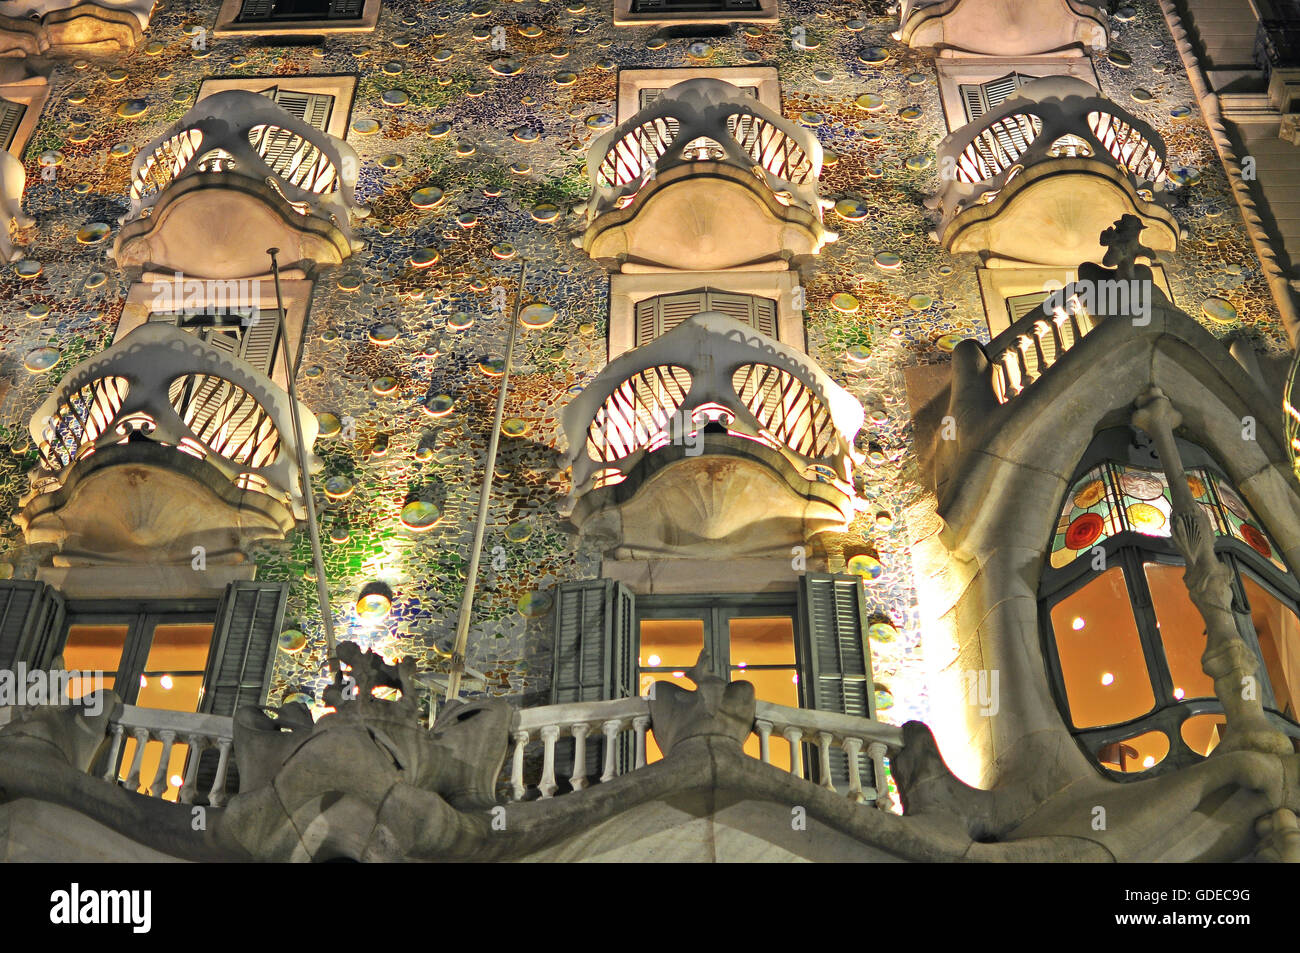 BARCELONA, SPAIN - DECEMBER 26: Facade of the Casa Batllo by Gaudi in Barcelona on December 26, 2014. Stock Photo